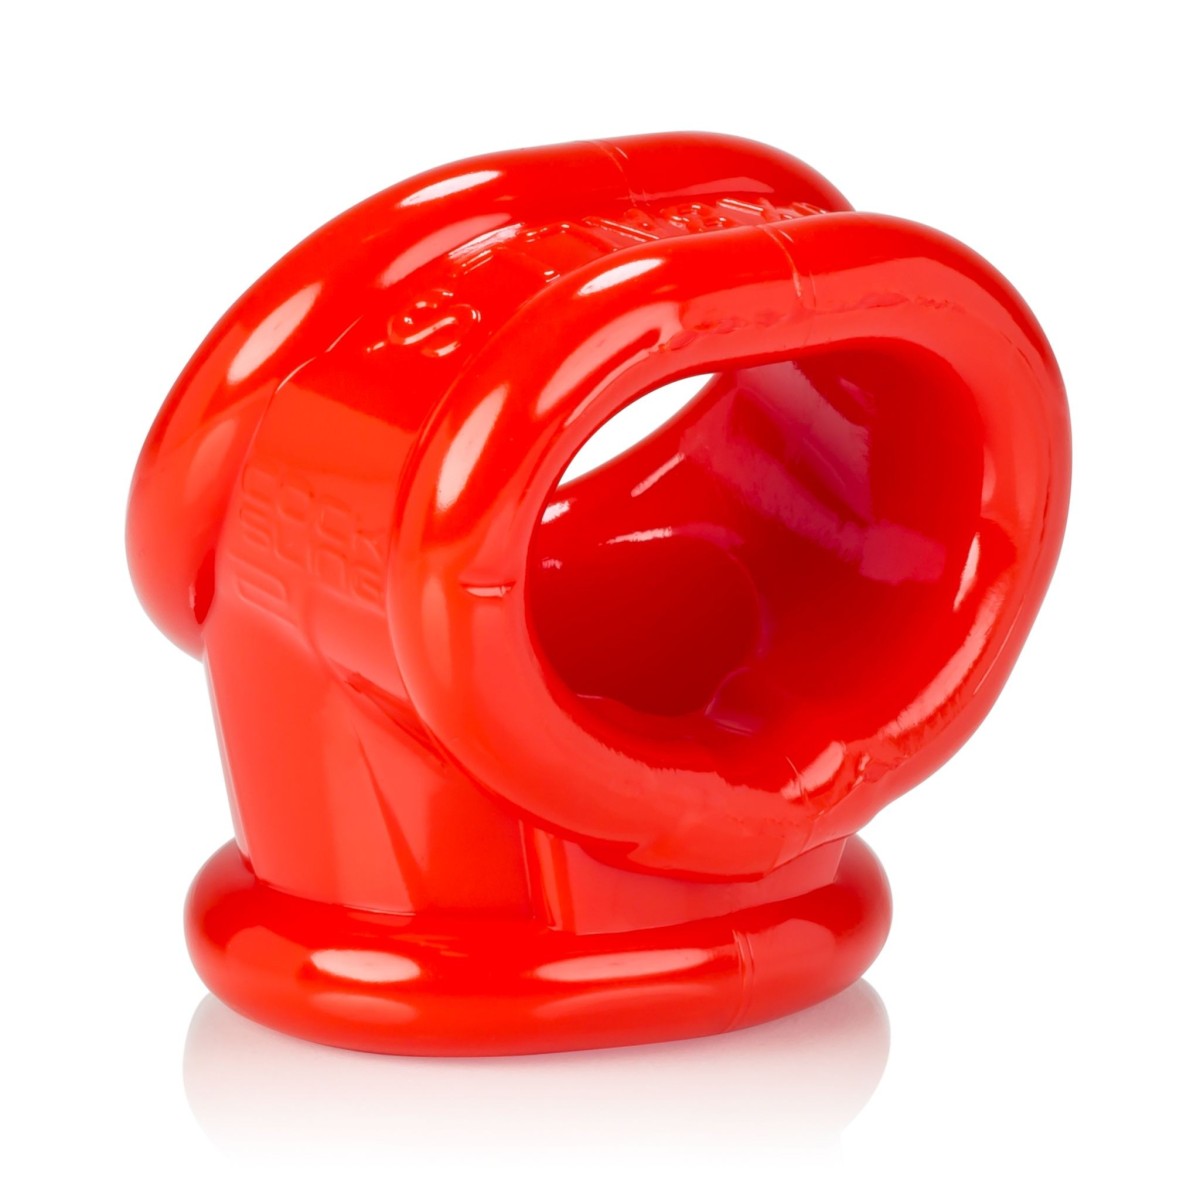 Erekční kroužek a natahovač varlat Oxballs Cocksling-2 červený, elastický erekční kroužek na penis a varlata